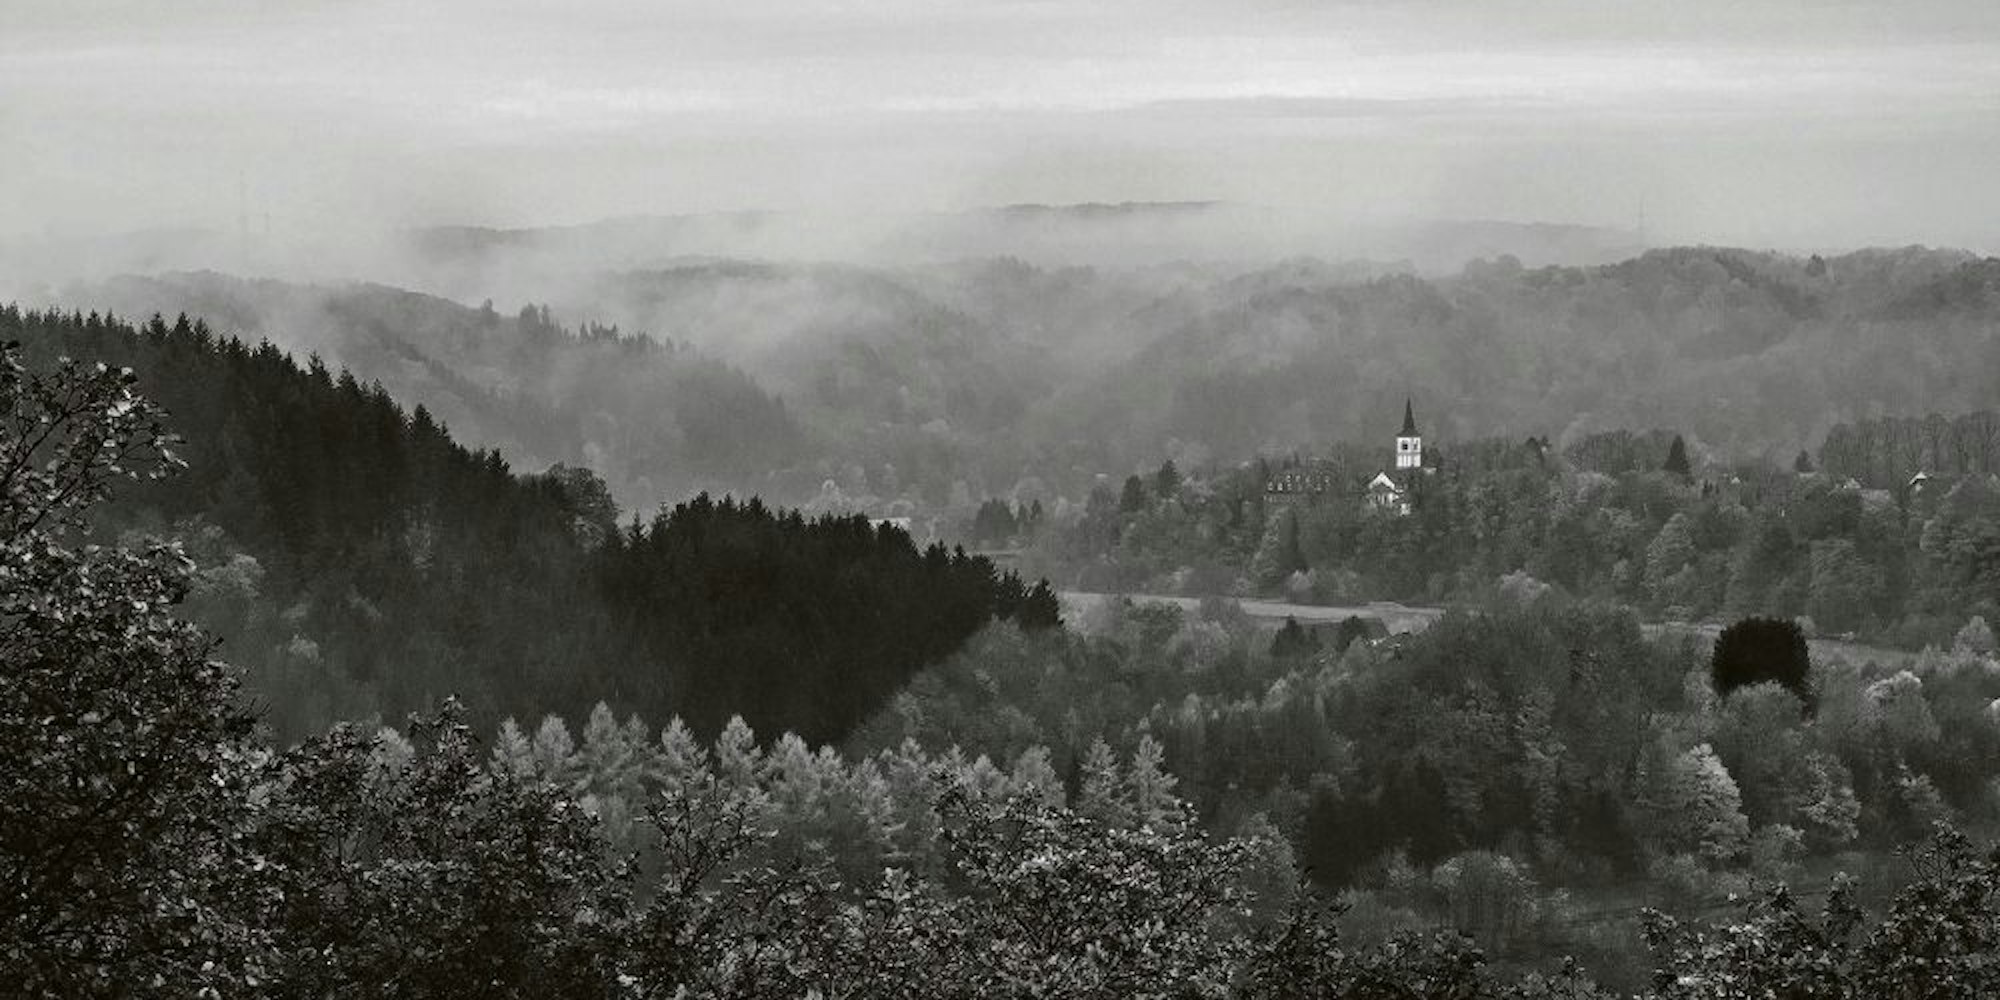 Blick auf Merten umgeben von Wald und Nebel, eine Aufnahme aus der Reihe Stille.